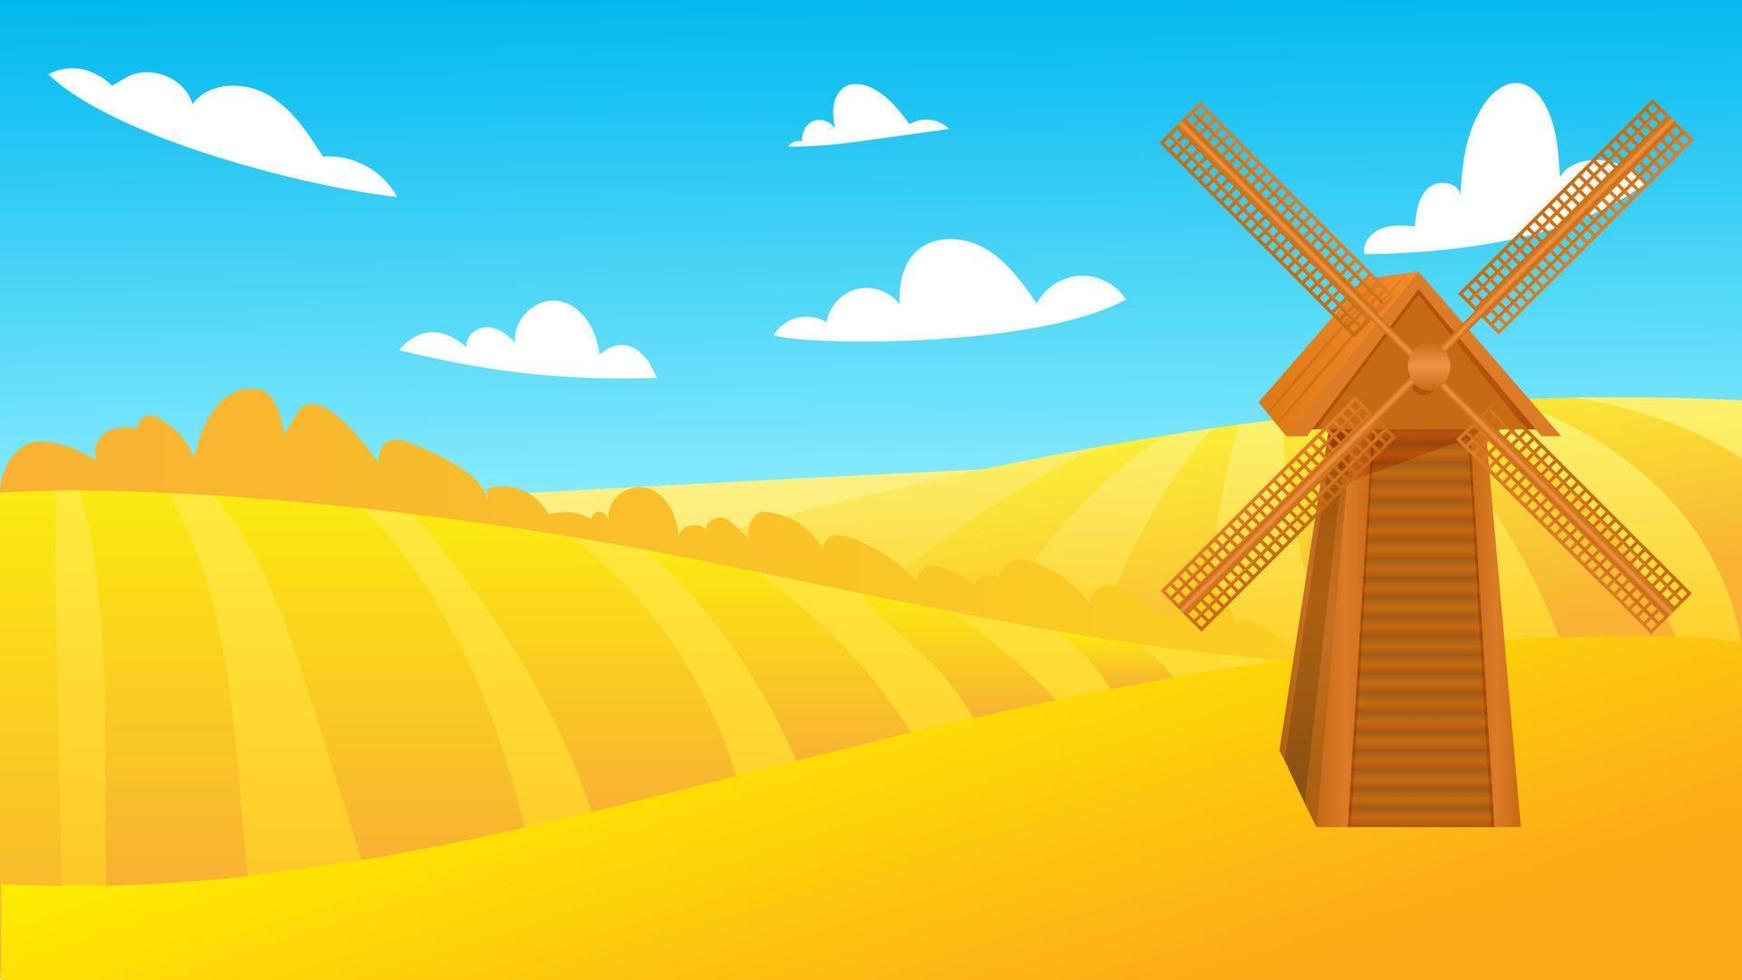 paisaje rural de verano con un molino de viento en el campo de trigo maduro en las colinas y valles en el fondo. ilustración vectorial con campos de grano dorado y molino. cosecha de otoño de granja vector